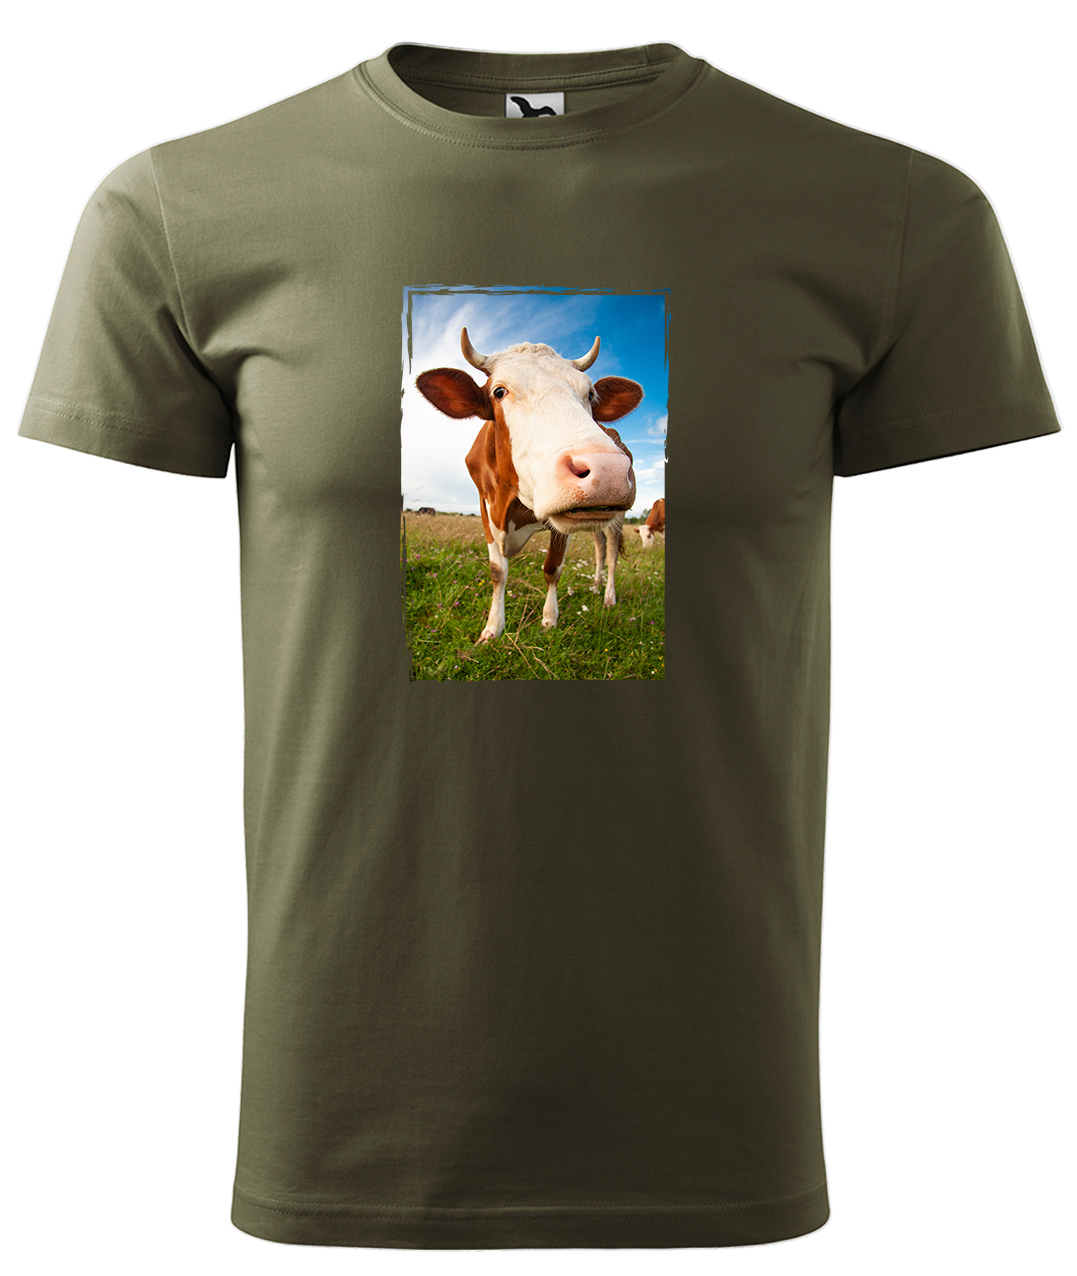 Dětské tričko s krávou - Na pastvě Velikost: 6 let / 122 cm, Barva: Military (69), Délka rukávu: Krátký rukáv